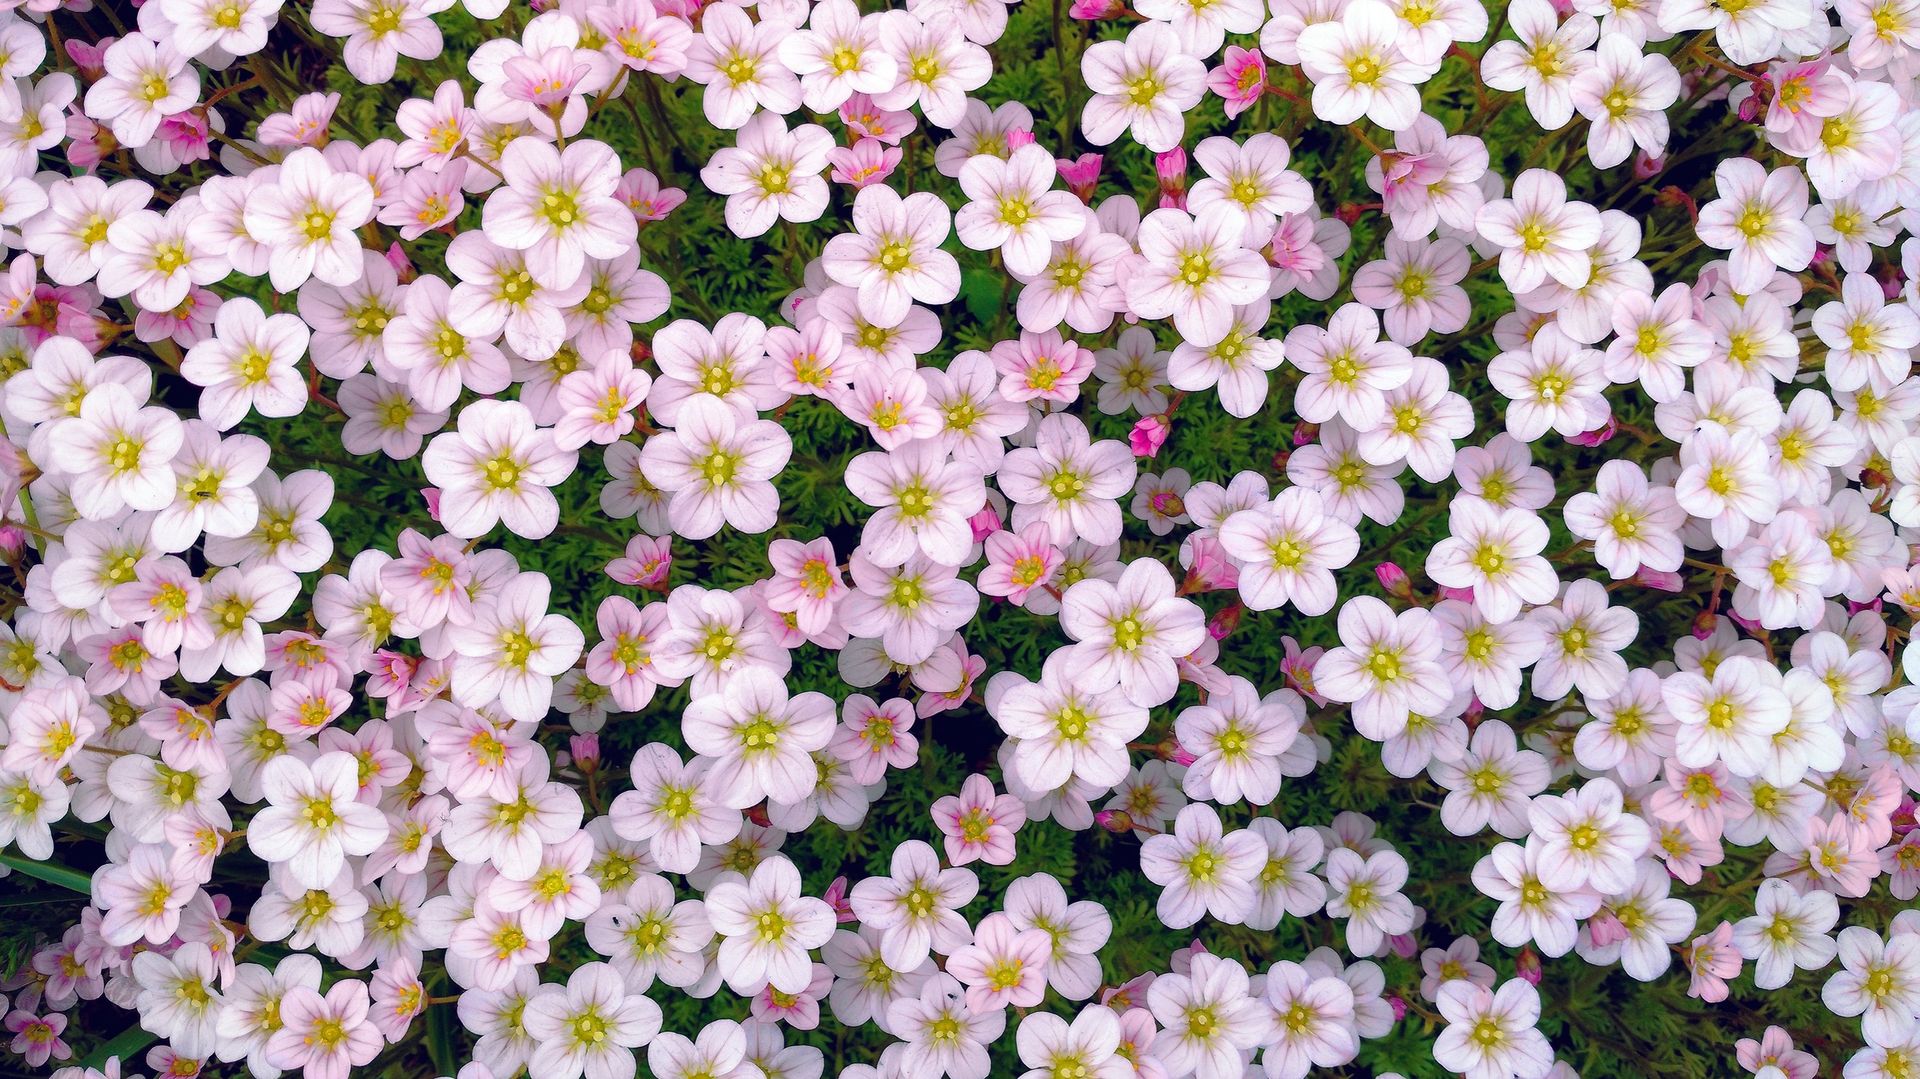 La floraison printanière des saxifrages est en forme de petites corolles étoilées, en coupe, avec une stupéfiante diversité de teintes.